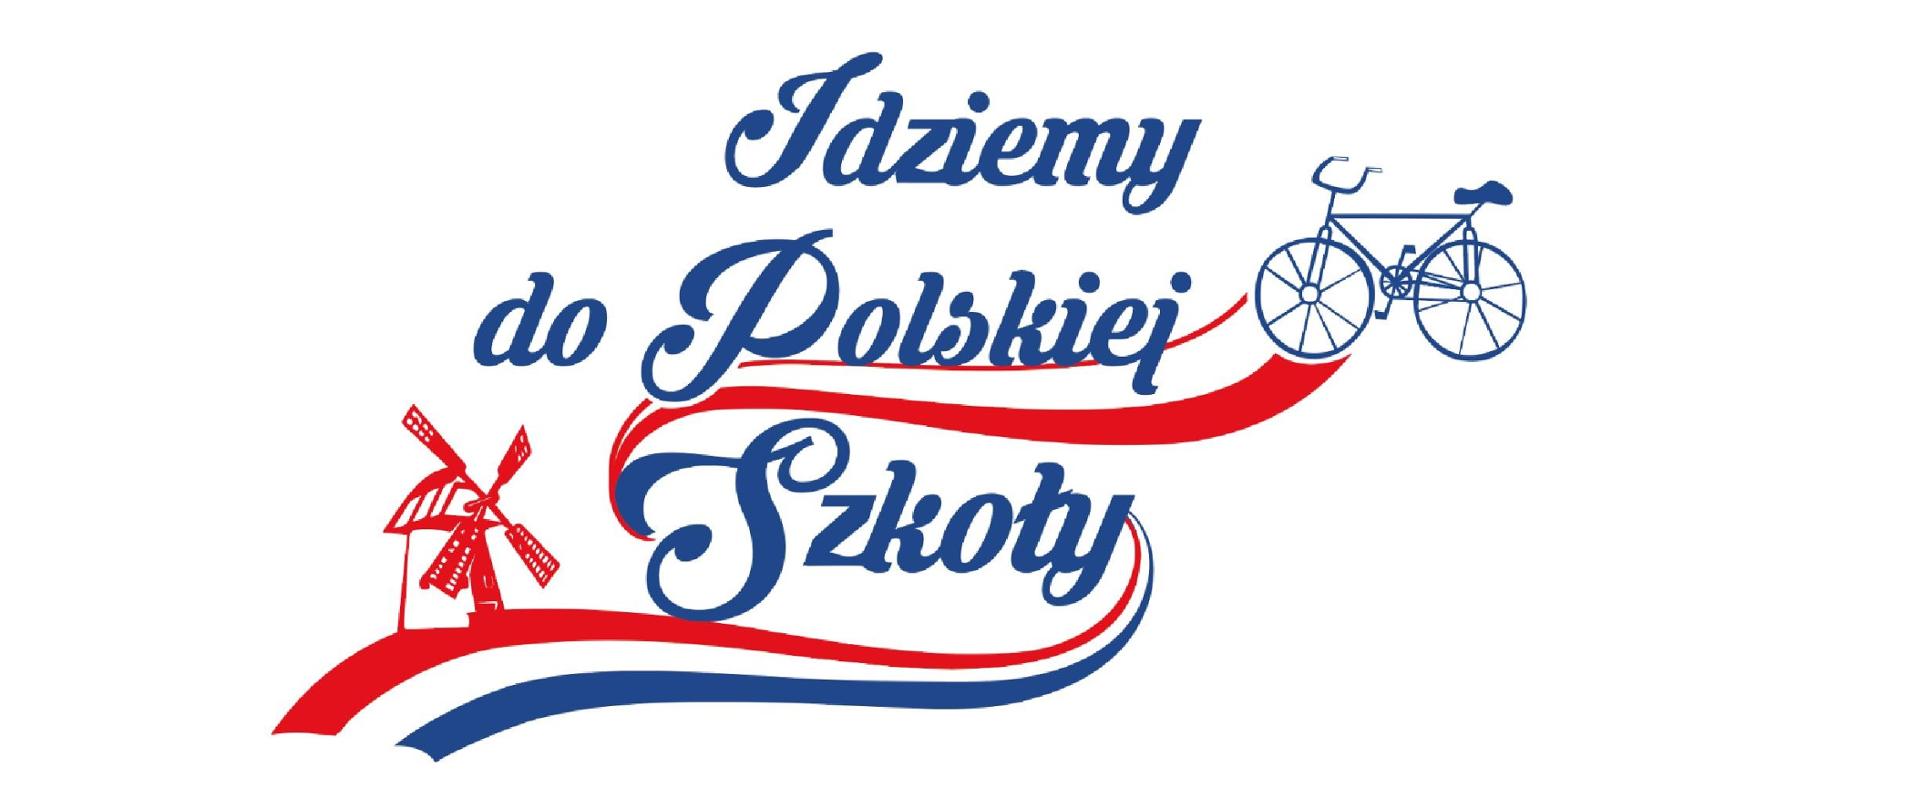 Idziemy do polskiej szkoły - logo